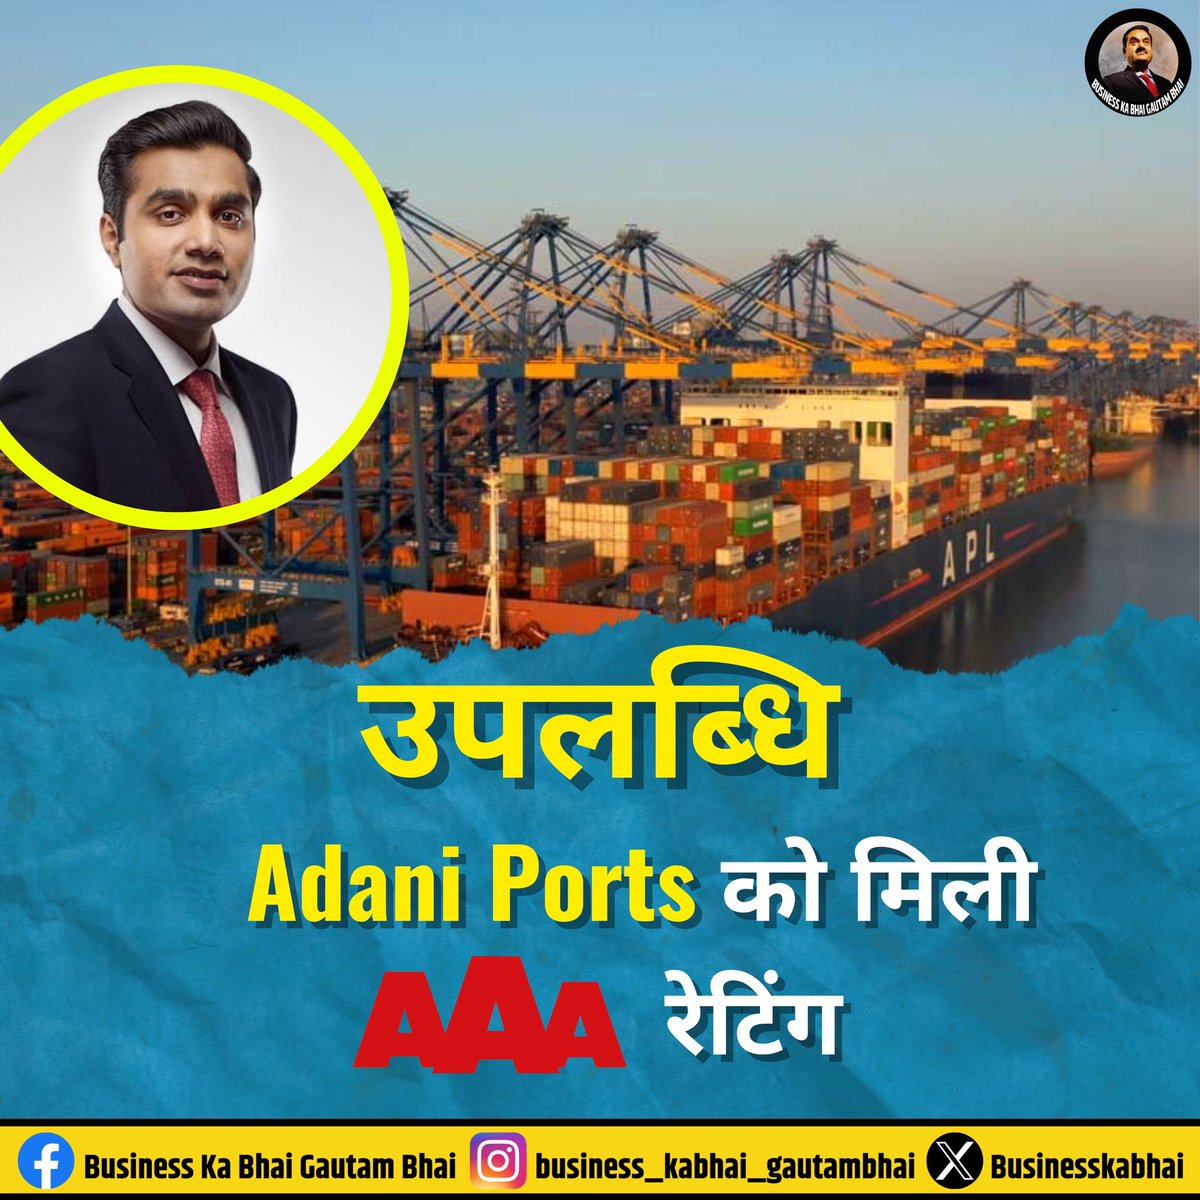 Adani Ports ने 'AAA' क्रेडिट रेटिंग अर्जित की है। यह उपलब्धि हासिल करने वाला यह भारत का पहला निजी बुनियादी ढांचा डेवलपर है! #GautamAdani #AdaniGroup #AdaniPort @Adaniports @AdaniOnline @AdaniKaran